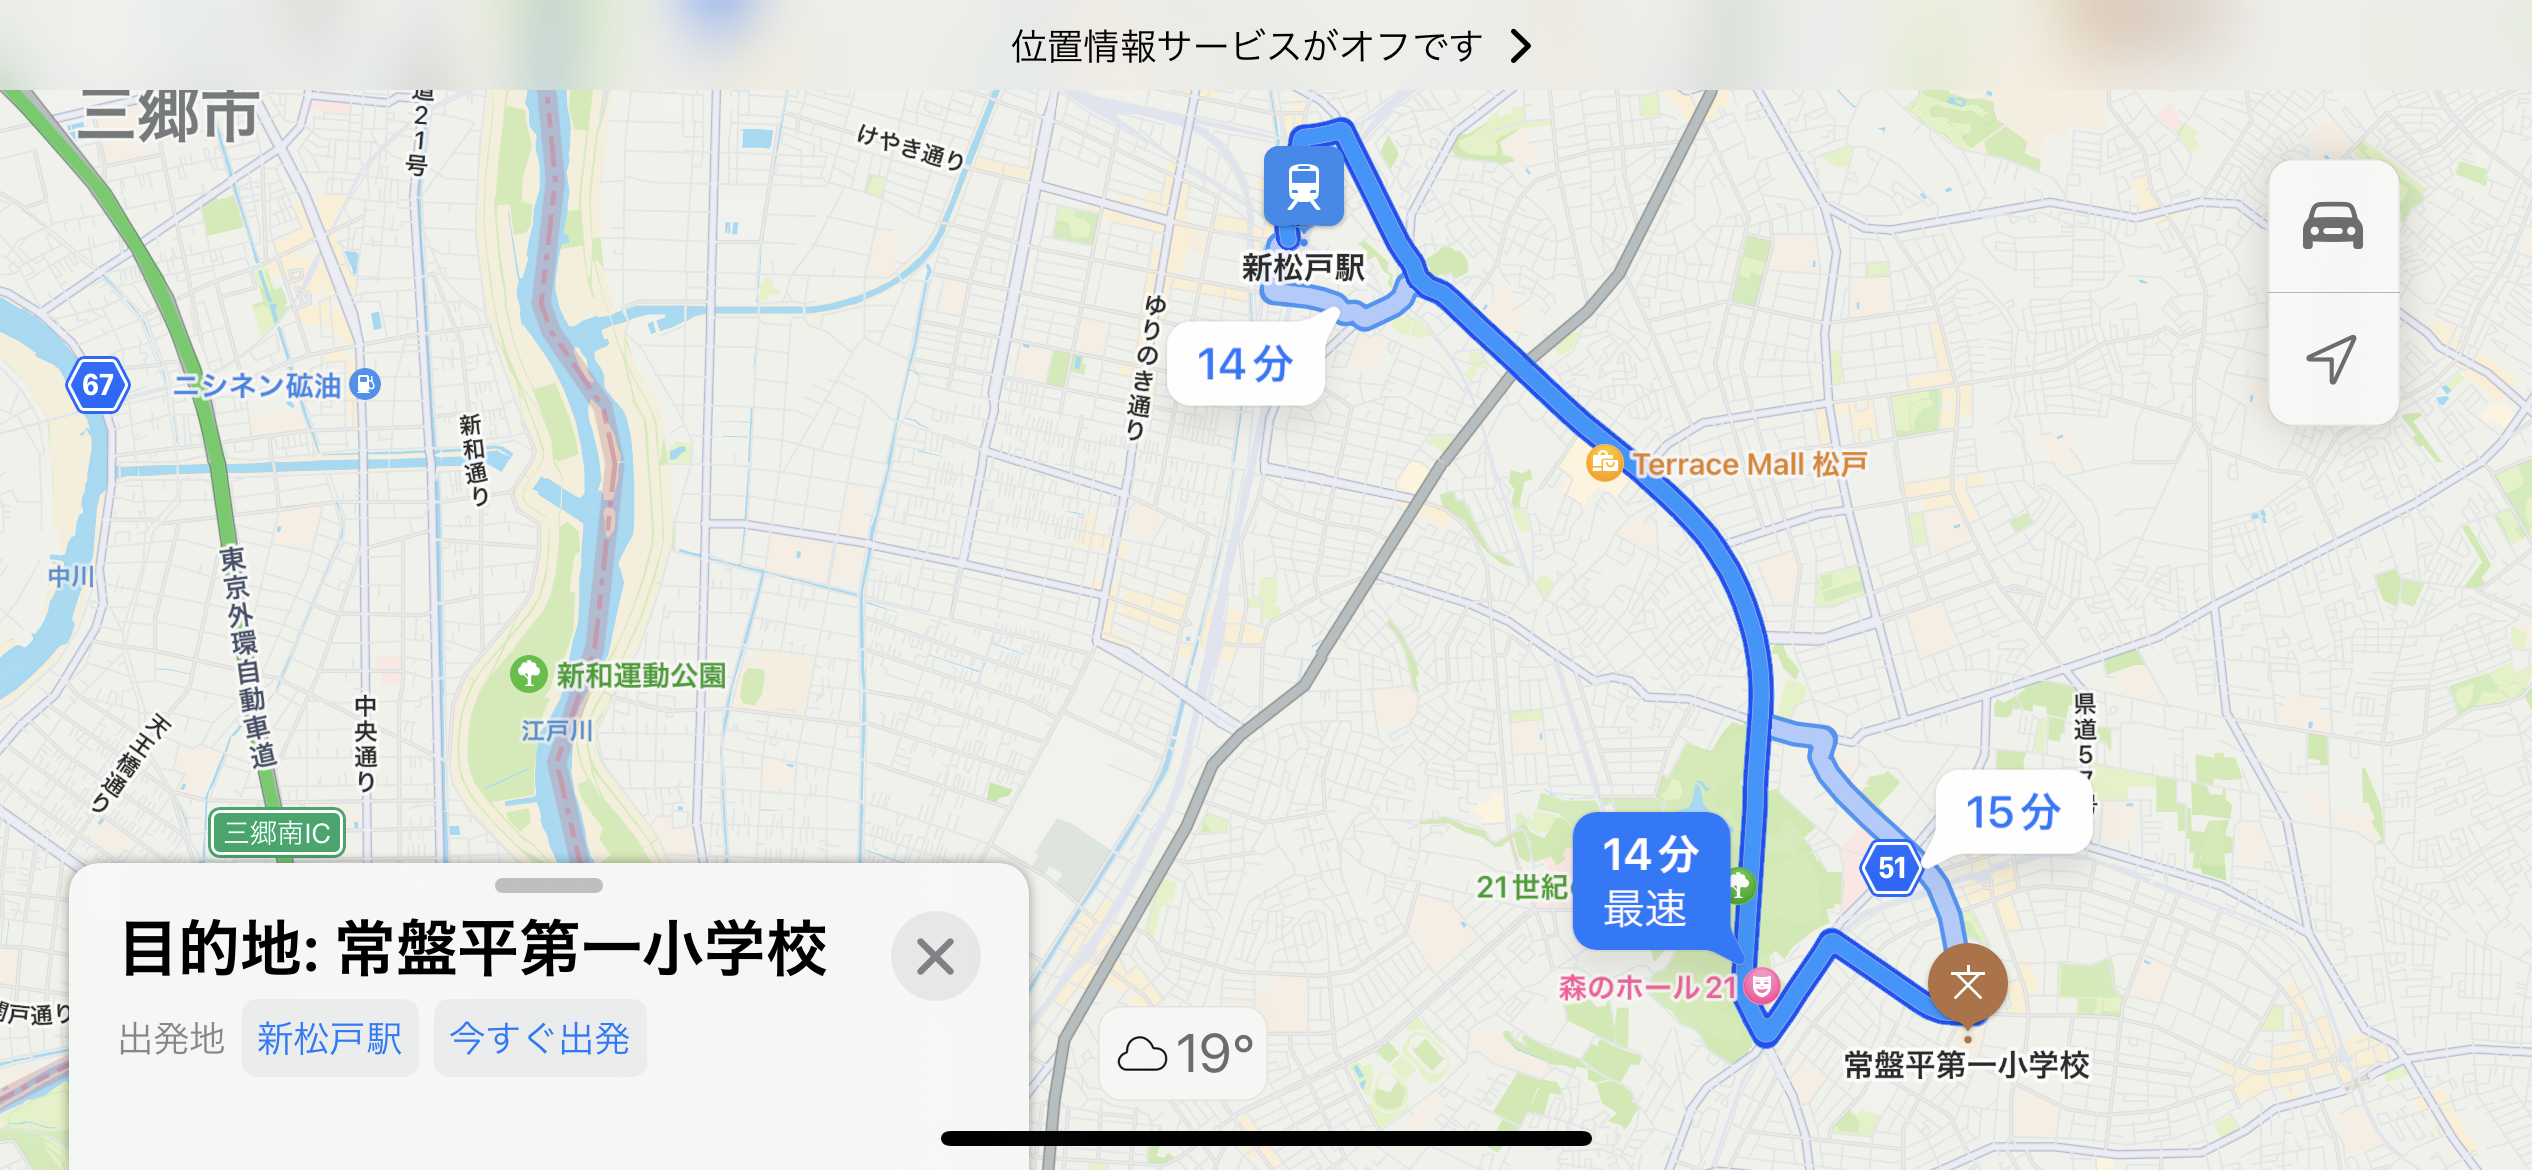 新松戸駅から松戸市立常盤平第一小学校経路